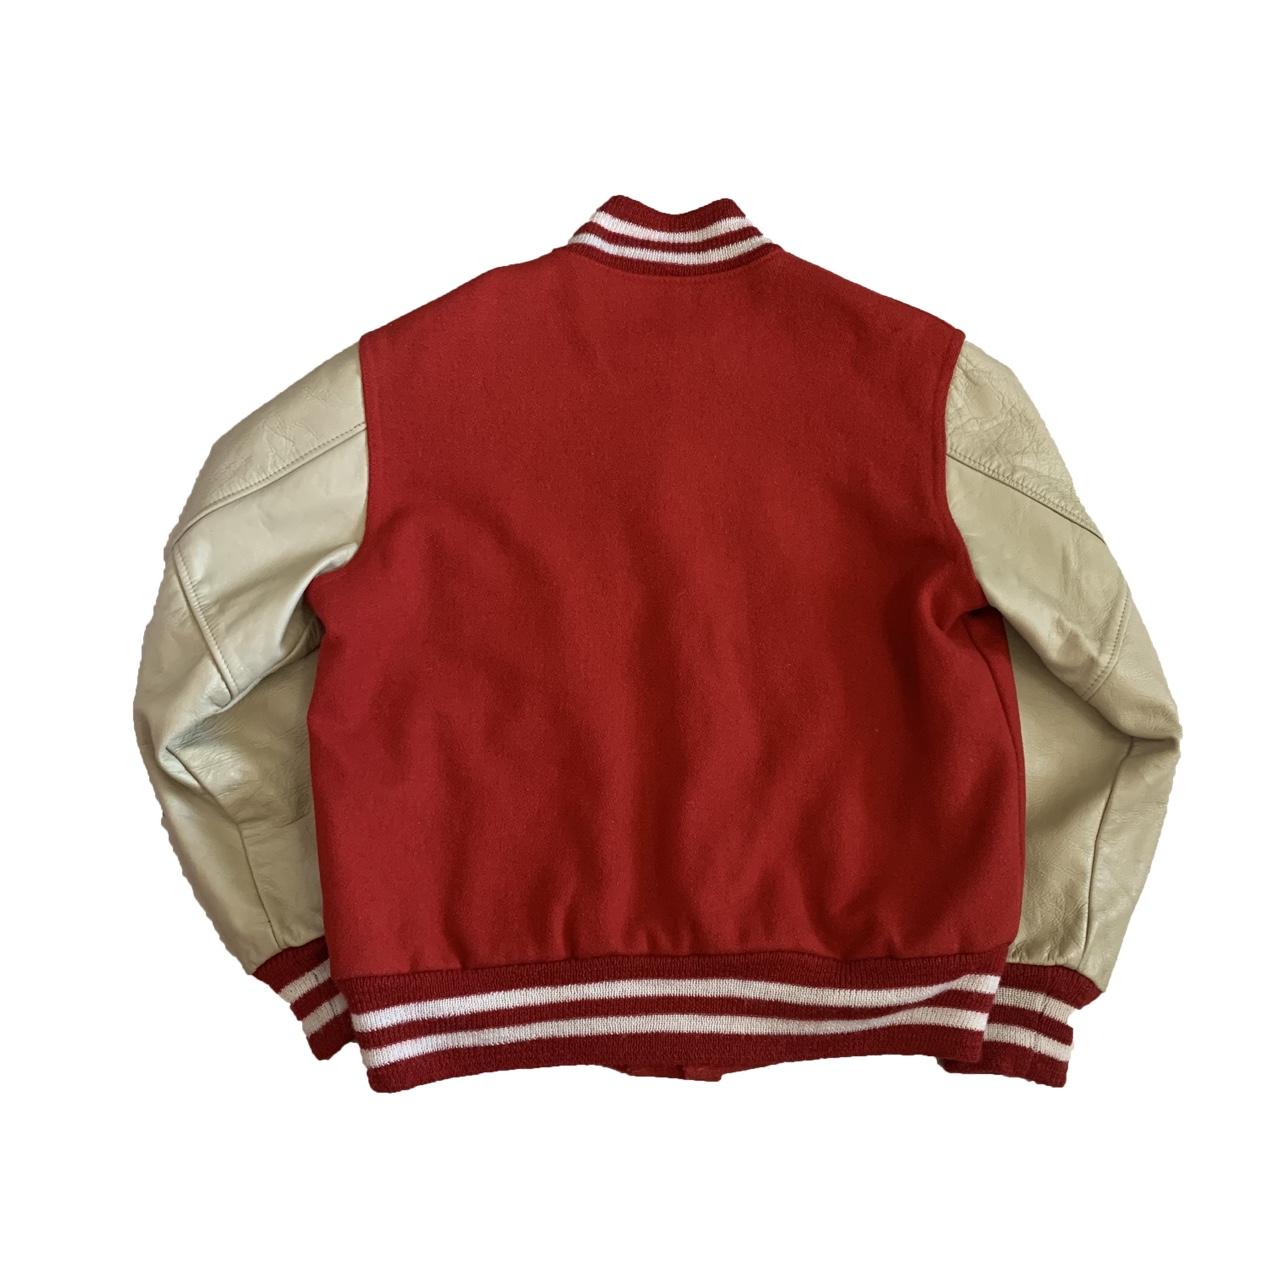 1960s Kaye Bros Varsity jacket This is the vintage... - Depop